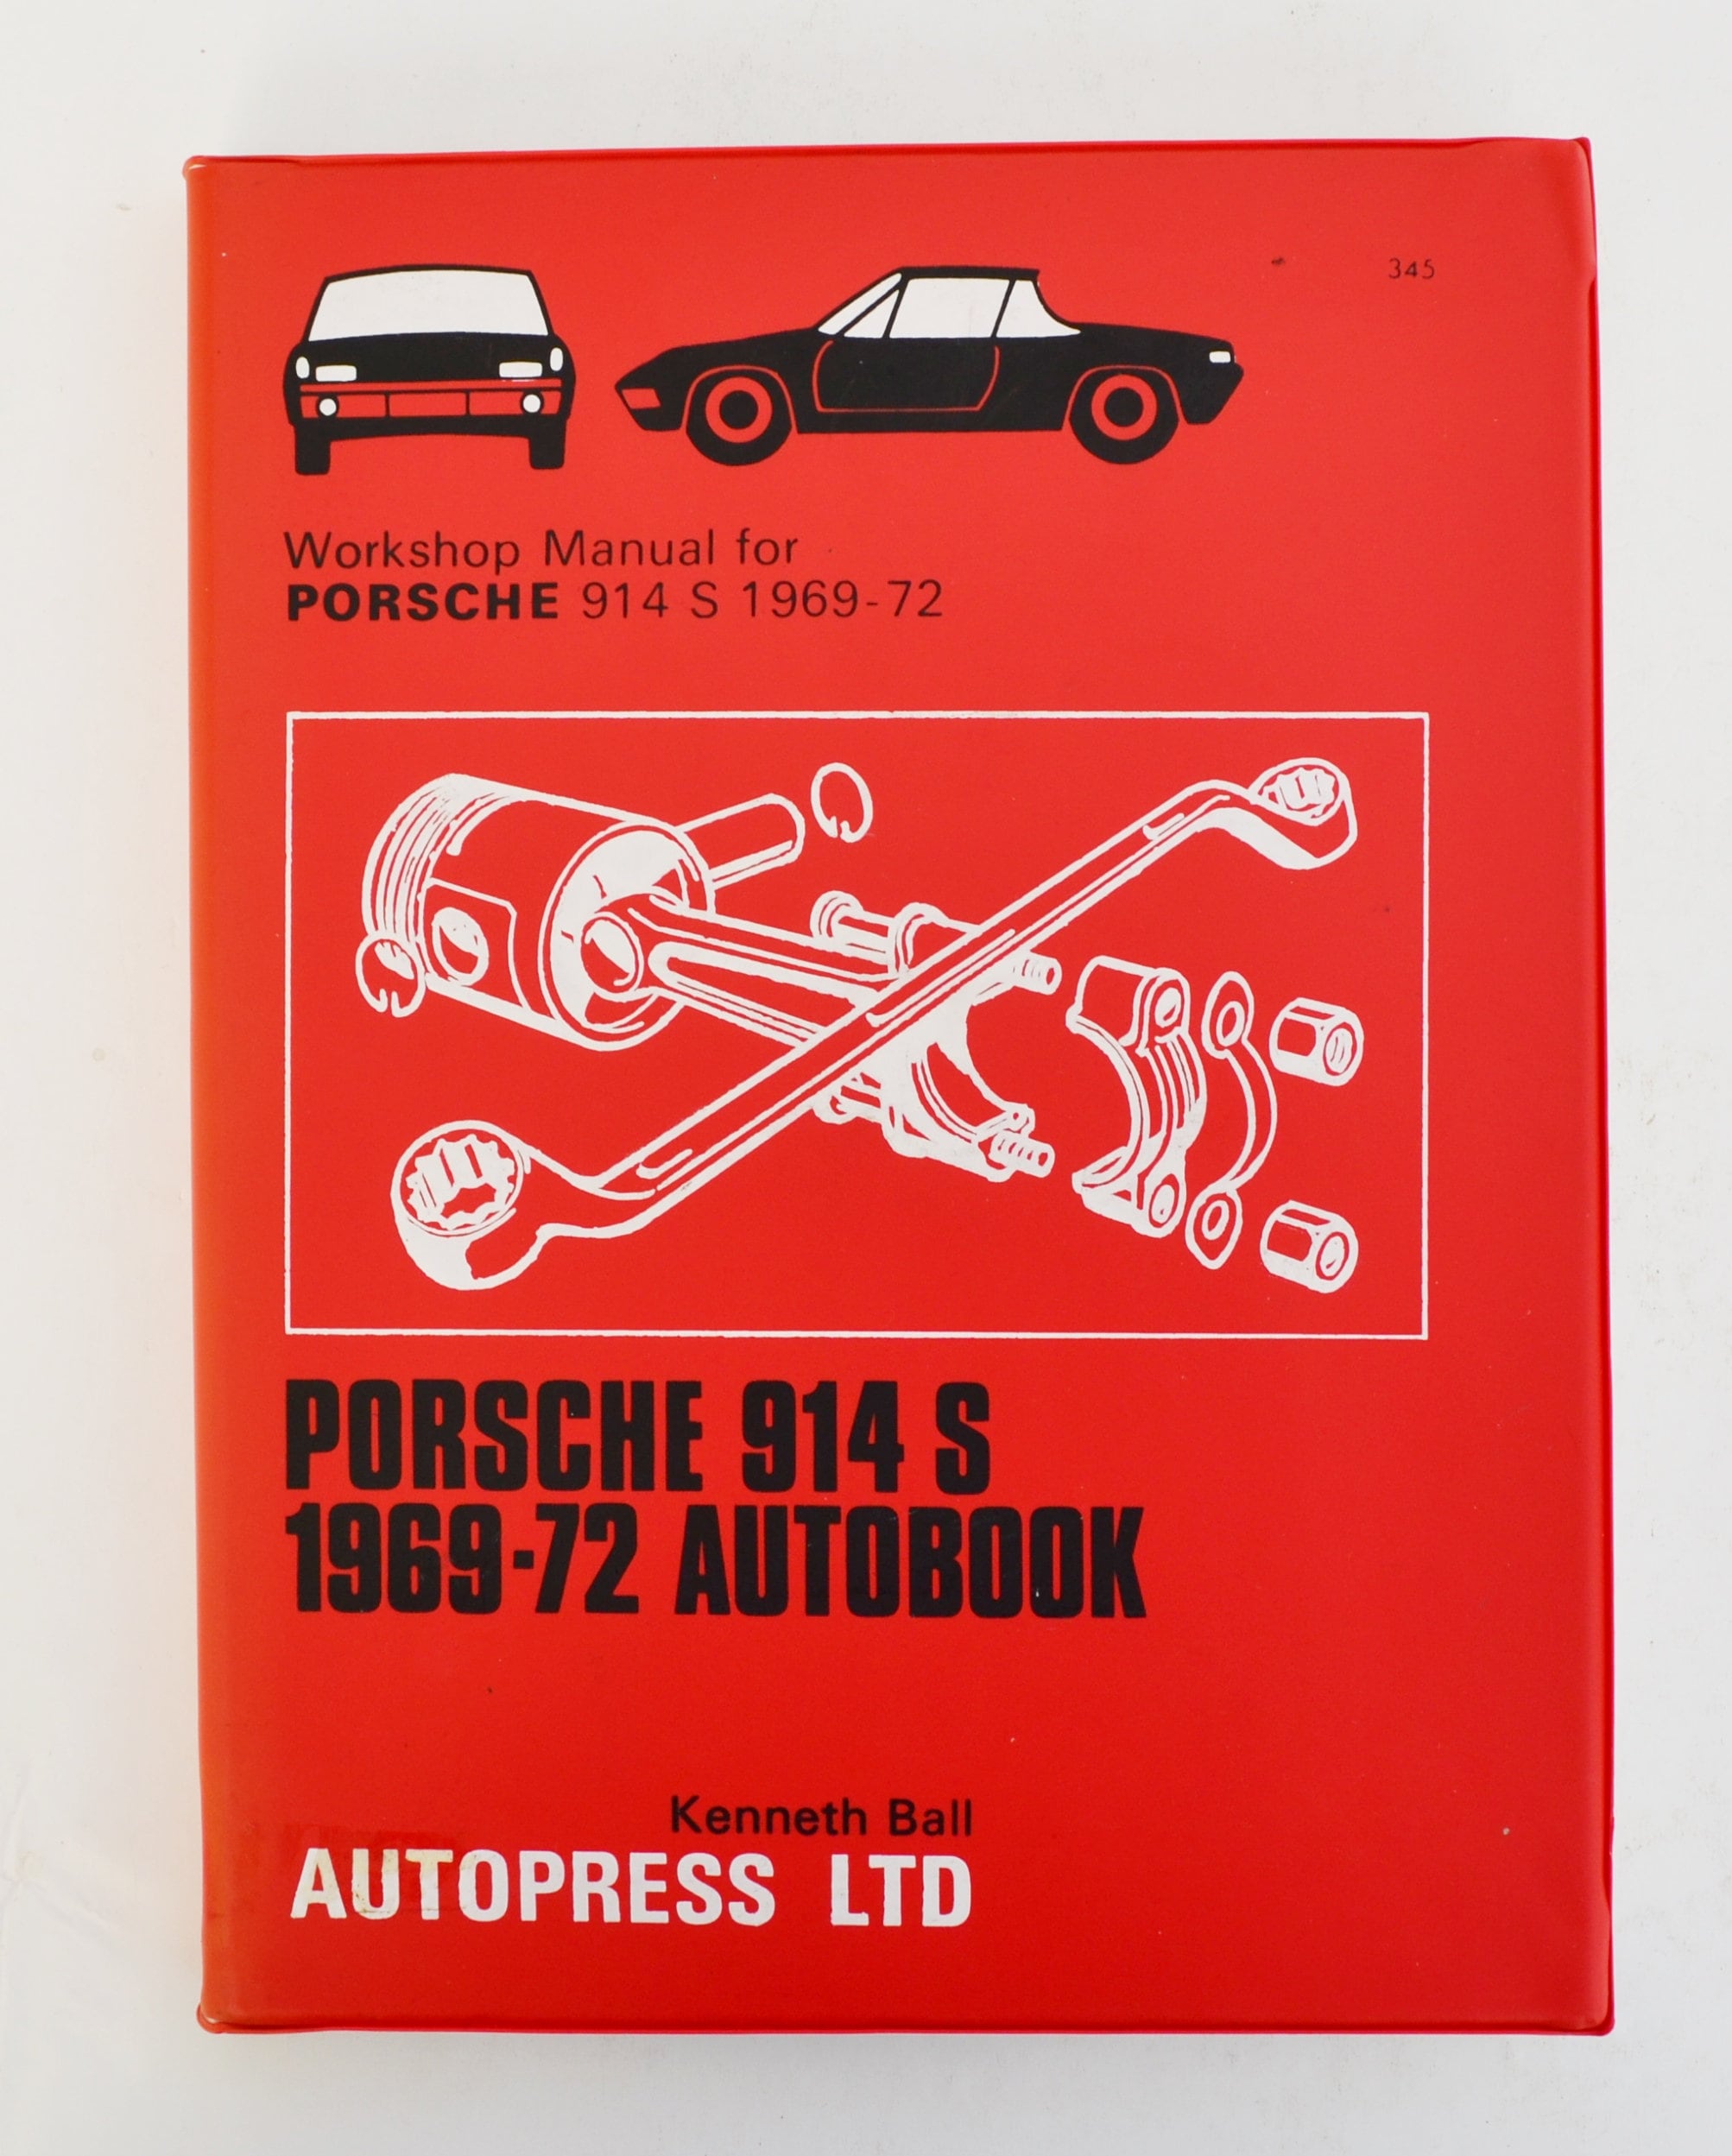 Autobook Porsche Workshop Manual Porsche 914 S Owners Manual | Etsy